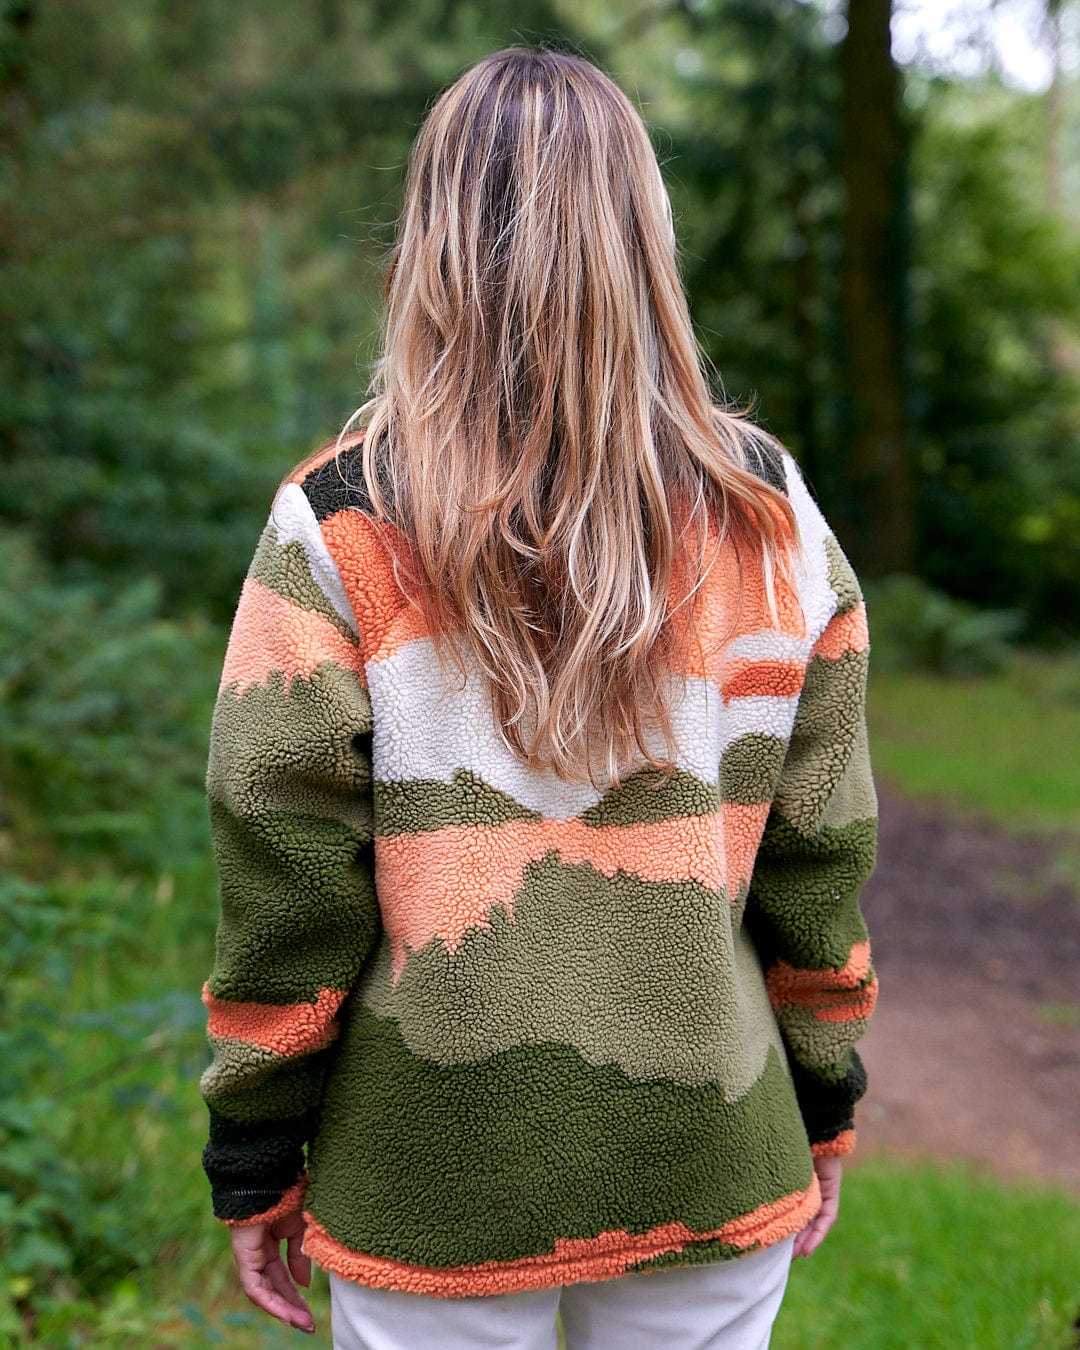 The back of a woman wearing a Saltrock Mountain Scape - Womens 1/4 Fleece - Orange sweater.